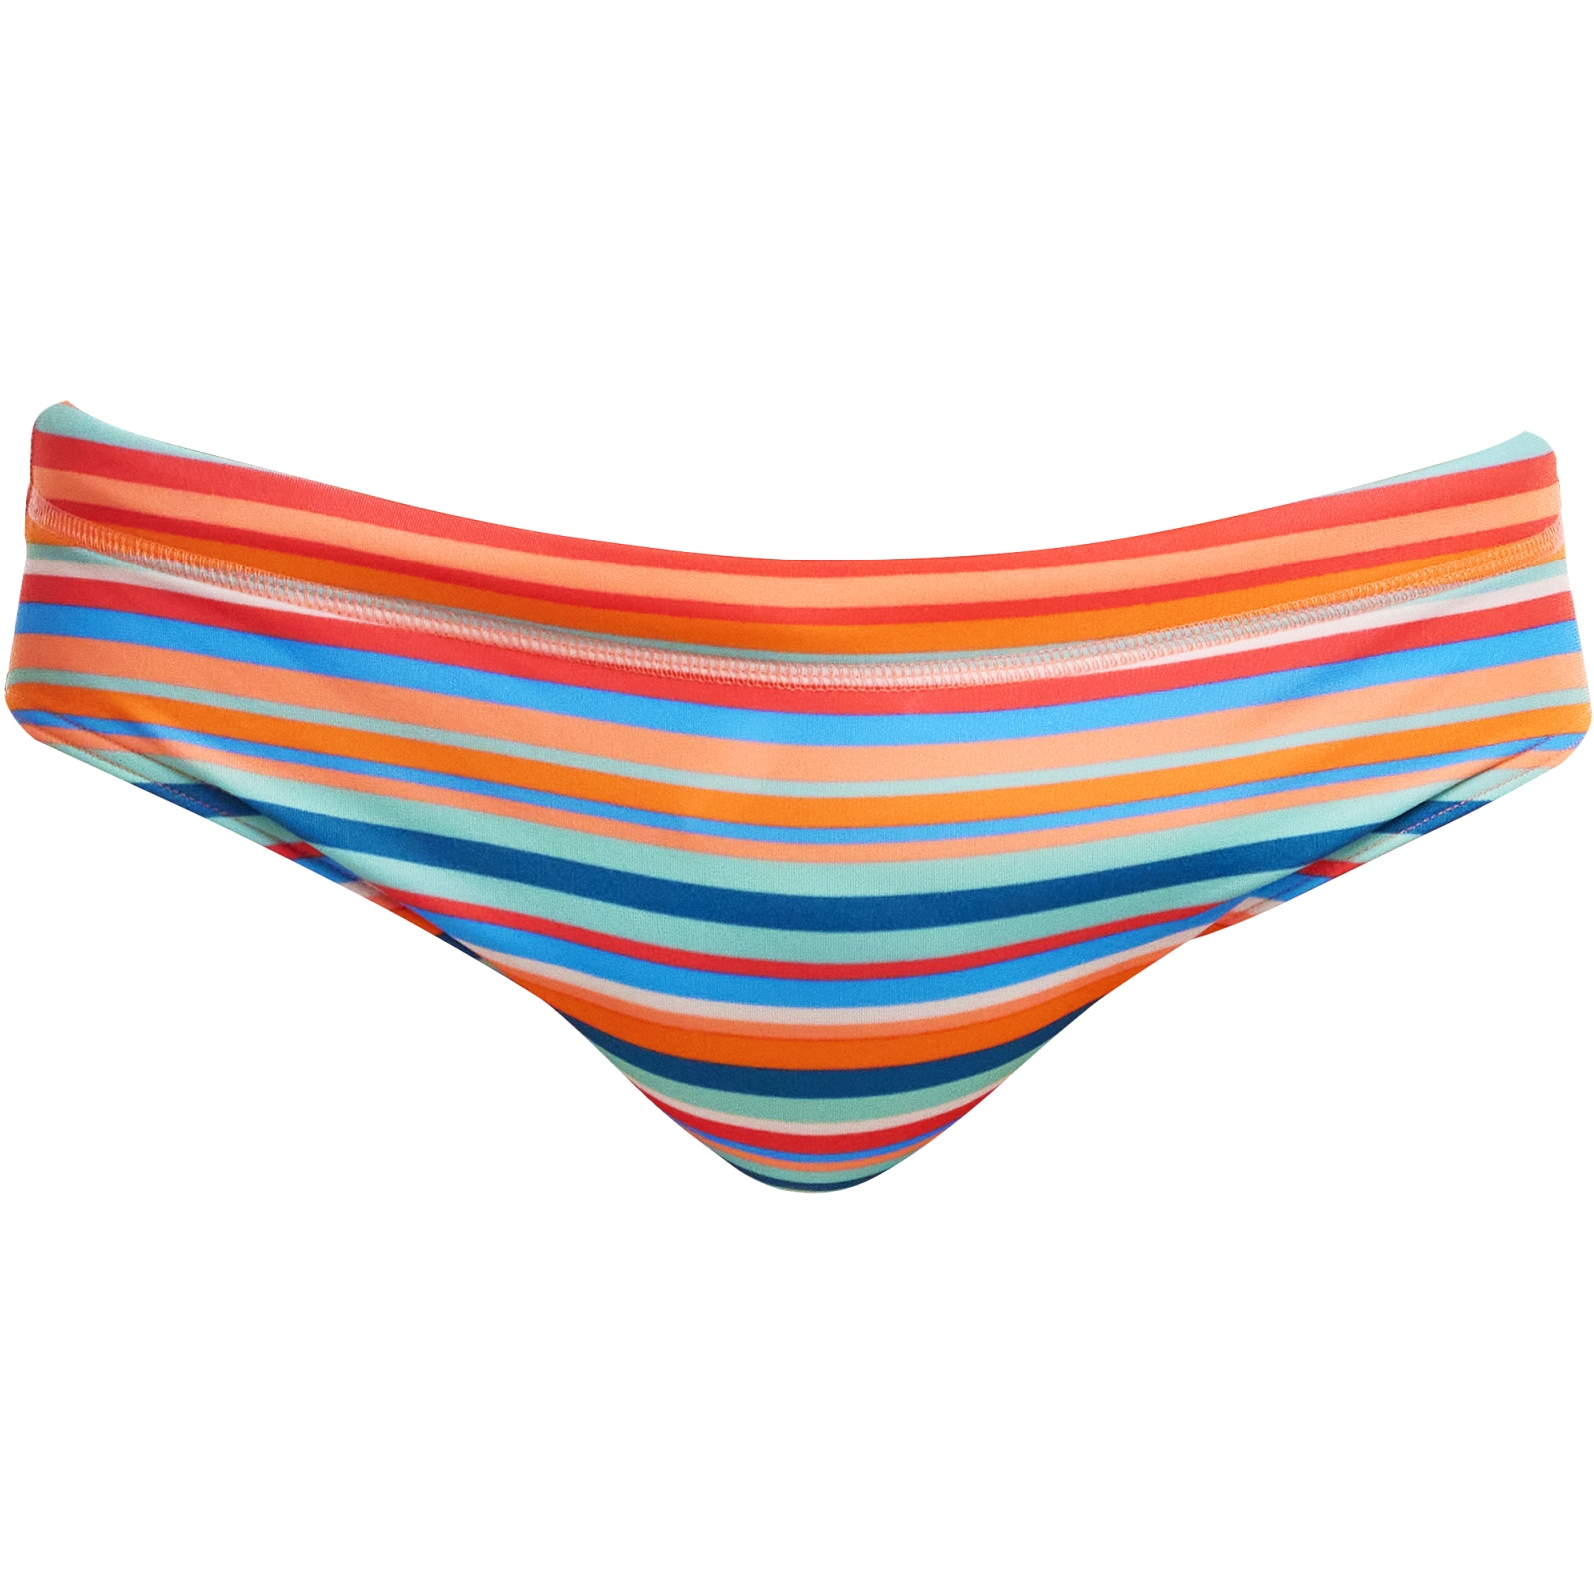 Productfoto van Funky Trunks Classic Zwemslip Heren - Ripe Stripe